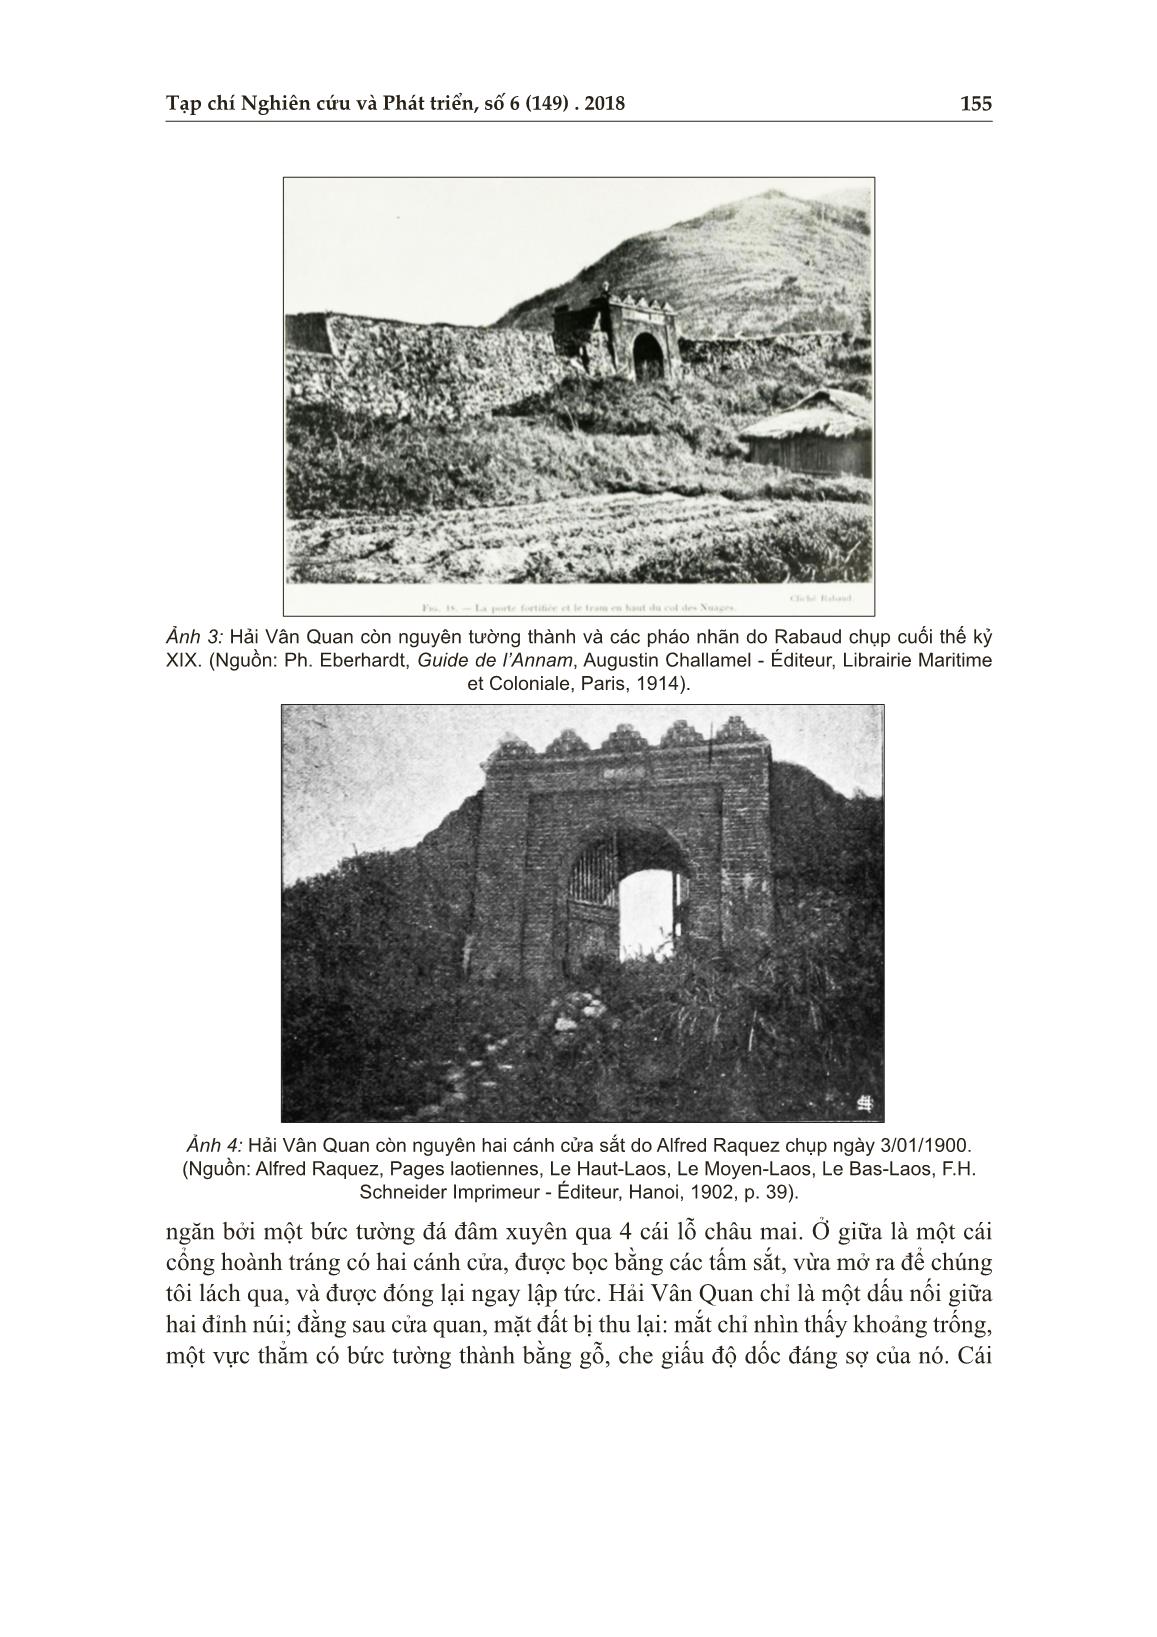 Từ đèo Hải Vân đến sông An Cựu - Huế năm 1876 trang 8